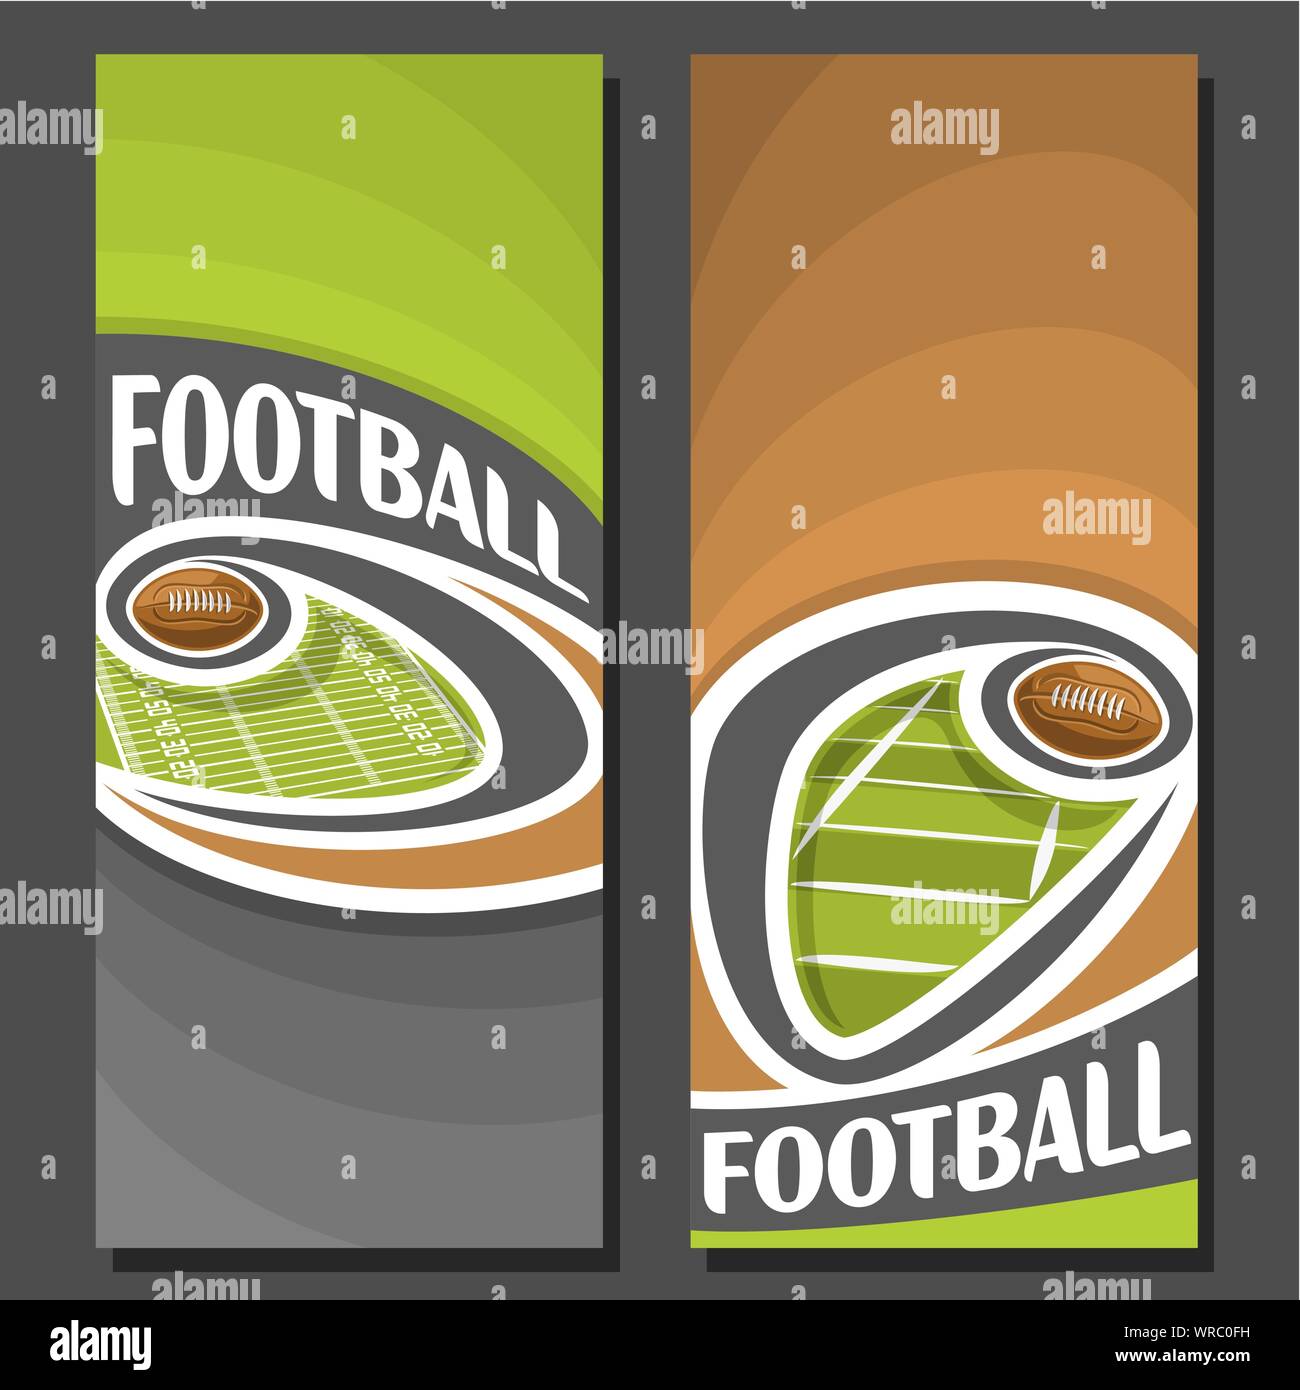 Vettore banner verticale per il football americano: 2 formati per titolo sul football americano tema, palla che vola sulla curva sopra il campo su sfondo marrone. Illustrazione Vettoriale